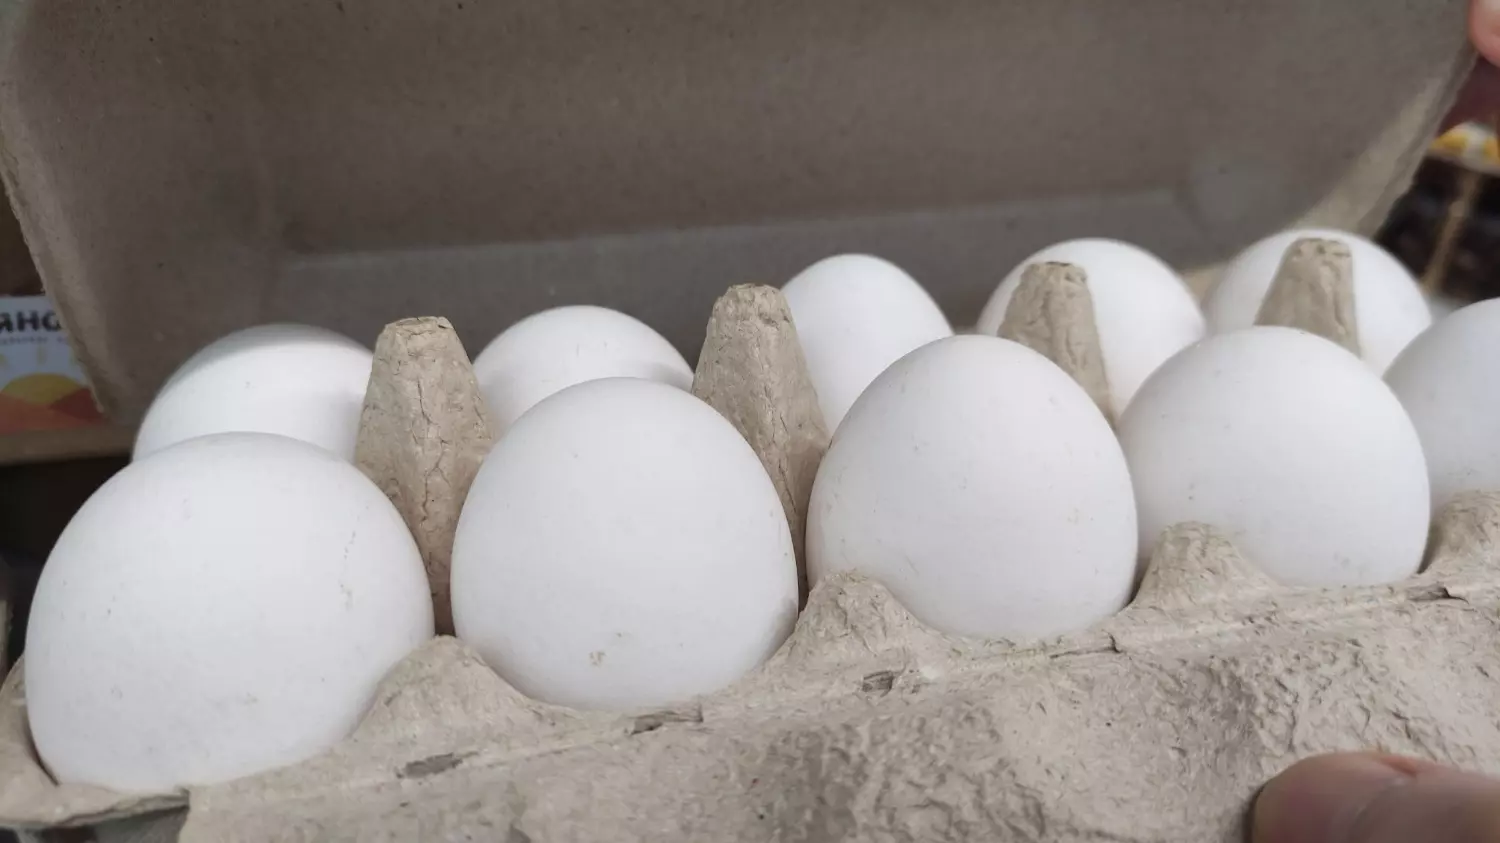 Самая дешевая цена на яйца в магазине «Пятерочка» — 89,99 рубля за десяток категории С1